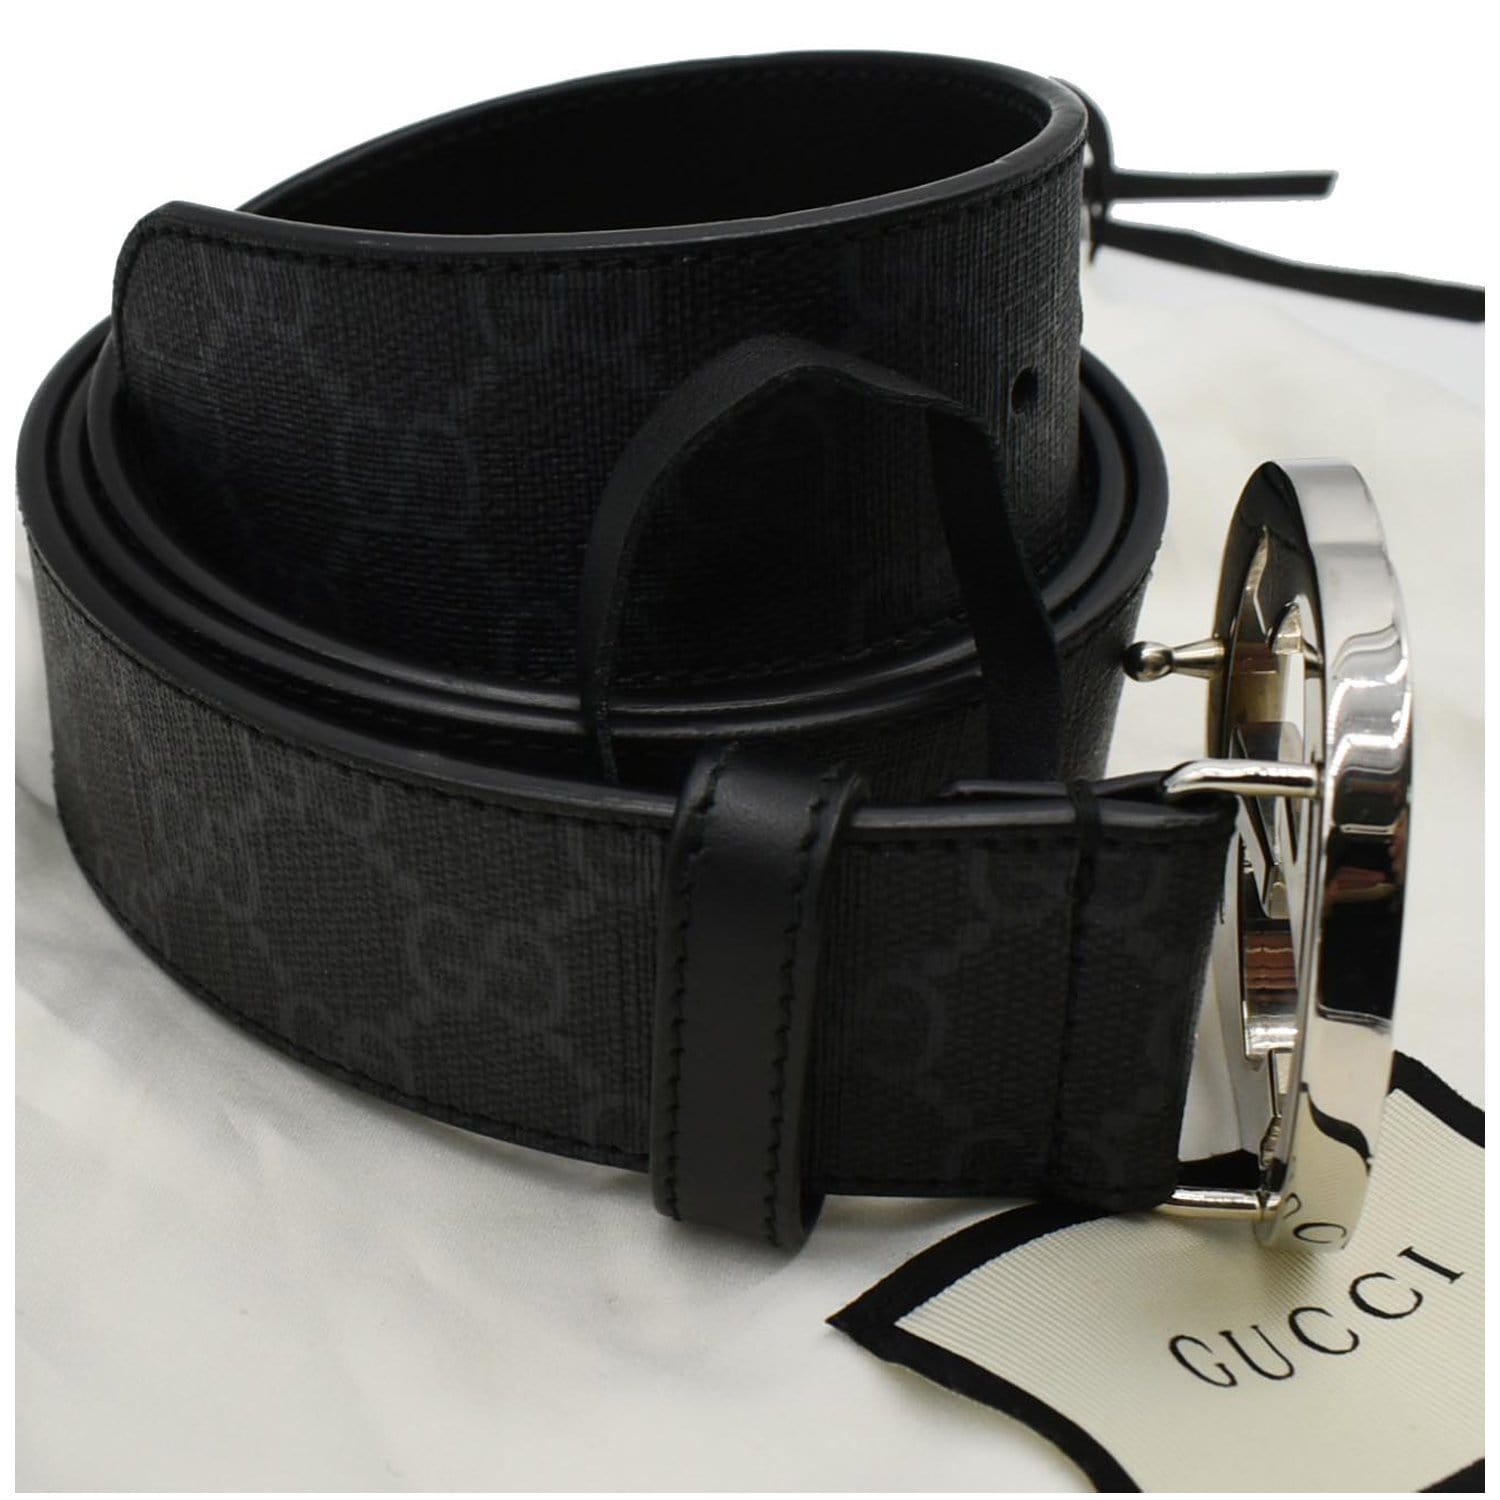 Gucci 'GG Supreme' canvas belt, Men's Accessories